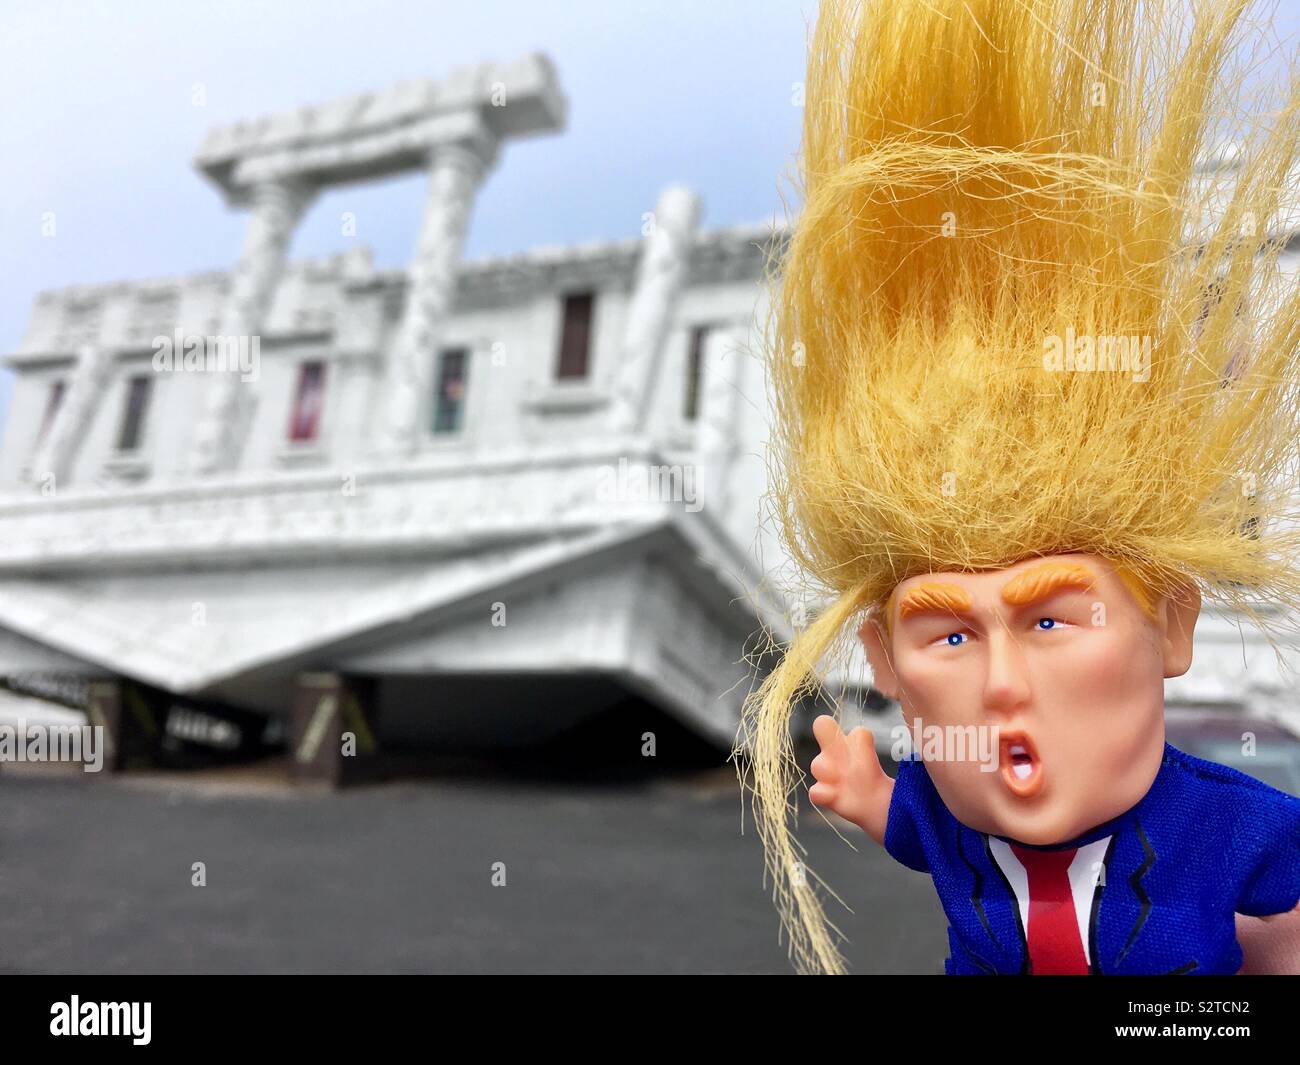 Donald Trump avec troll cheveux orange sauvage se trouve en face de la Maison Blanche à l'envers Banque D'Images